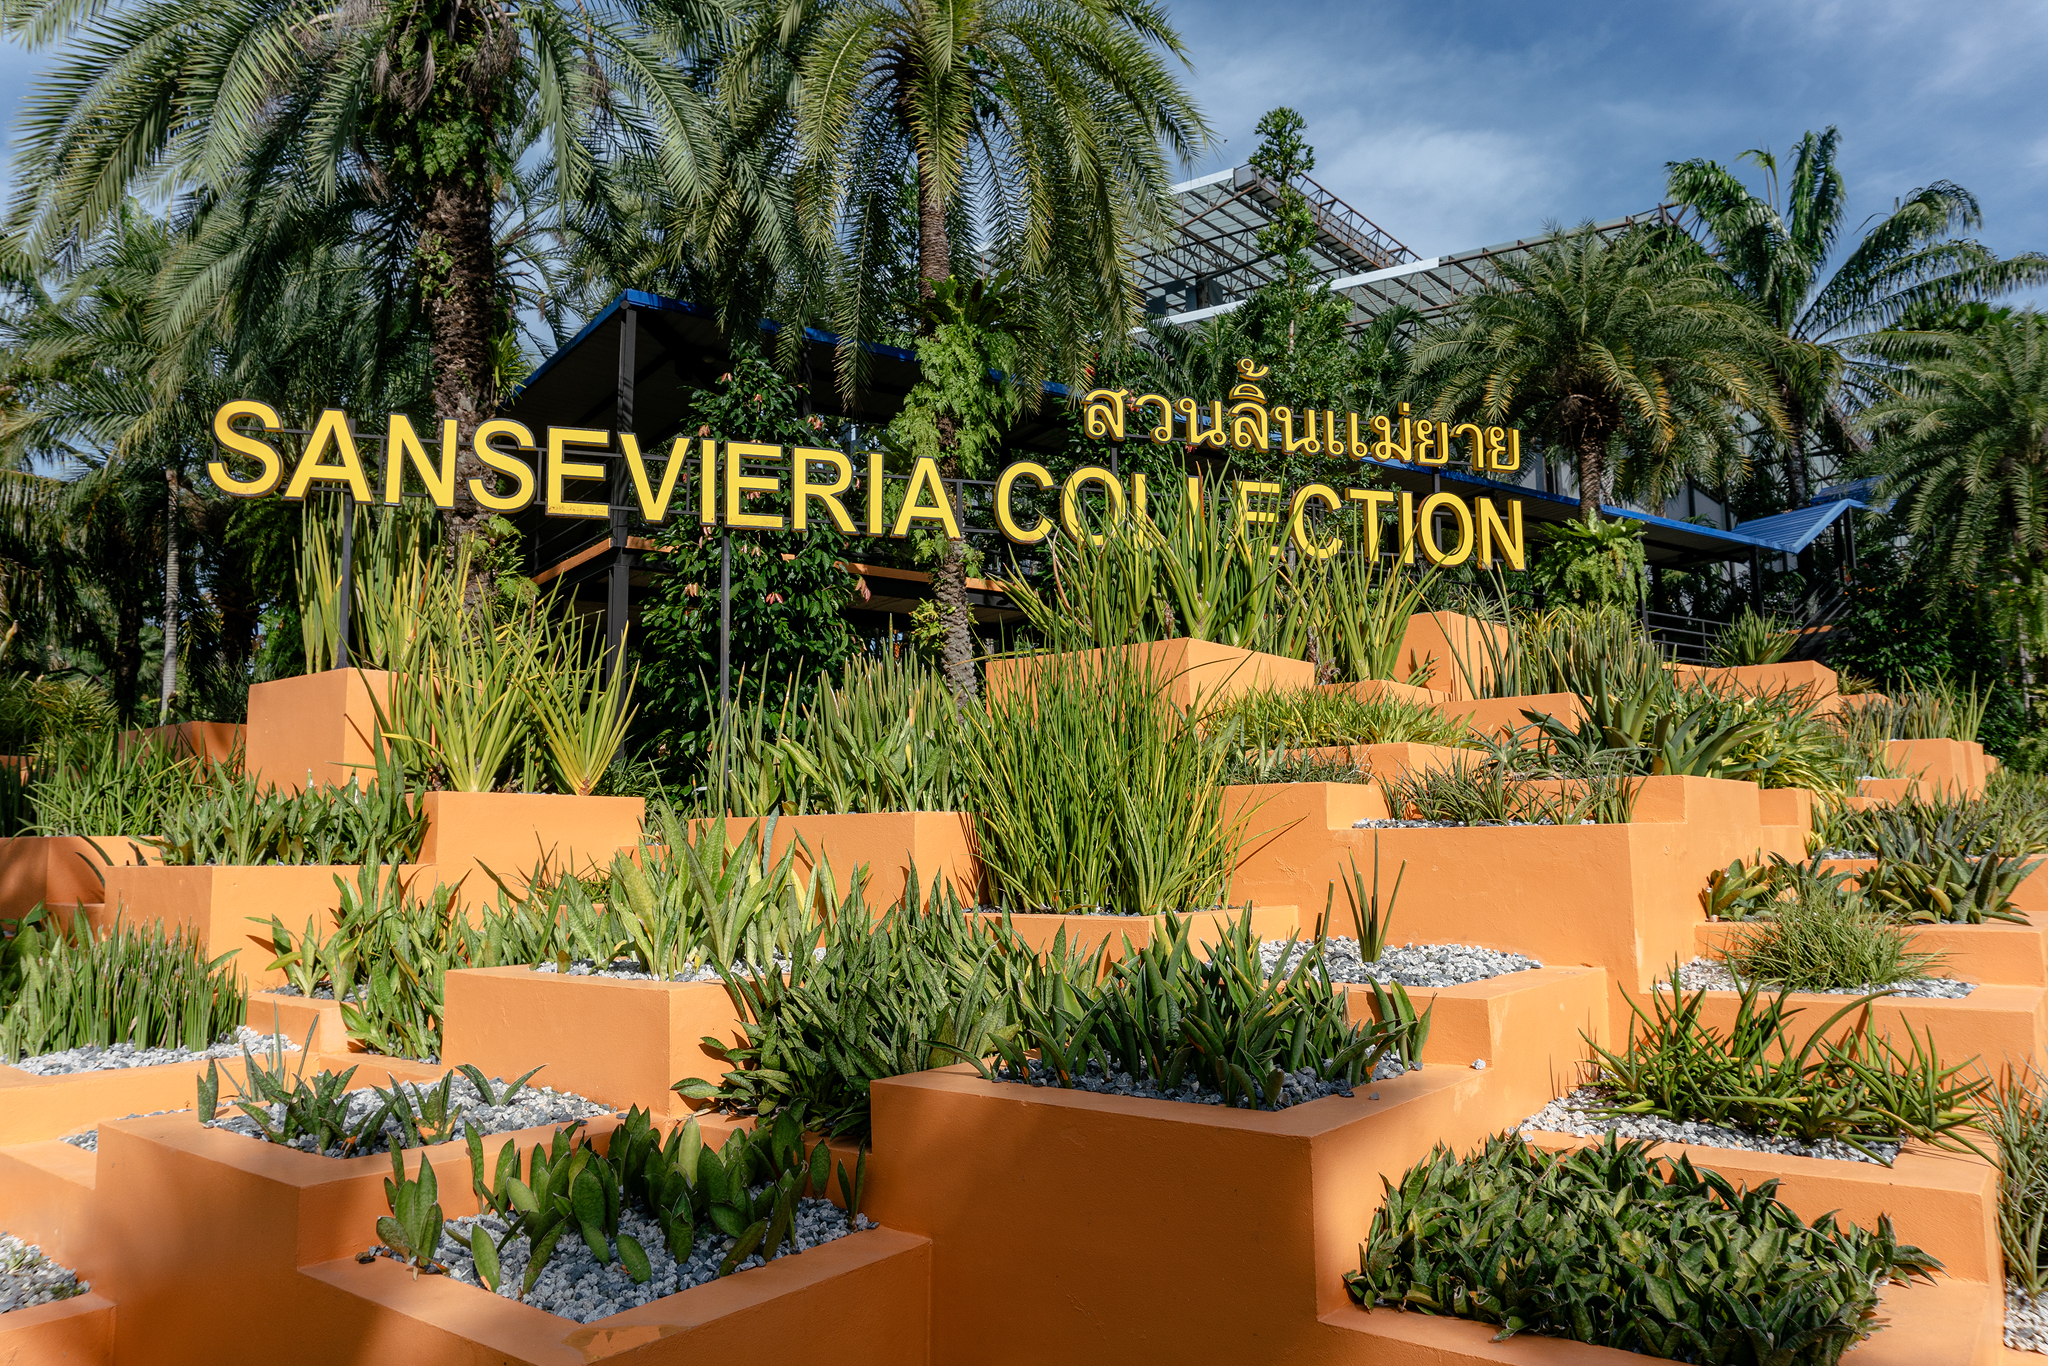 Sansevieria Collection